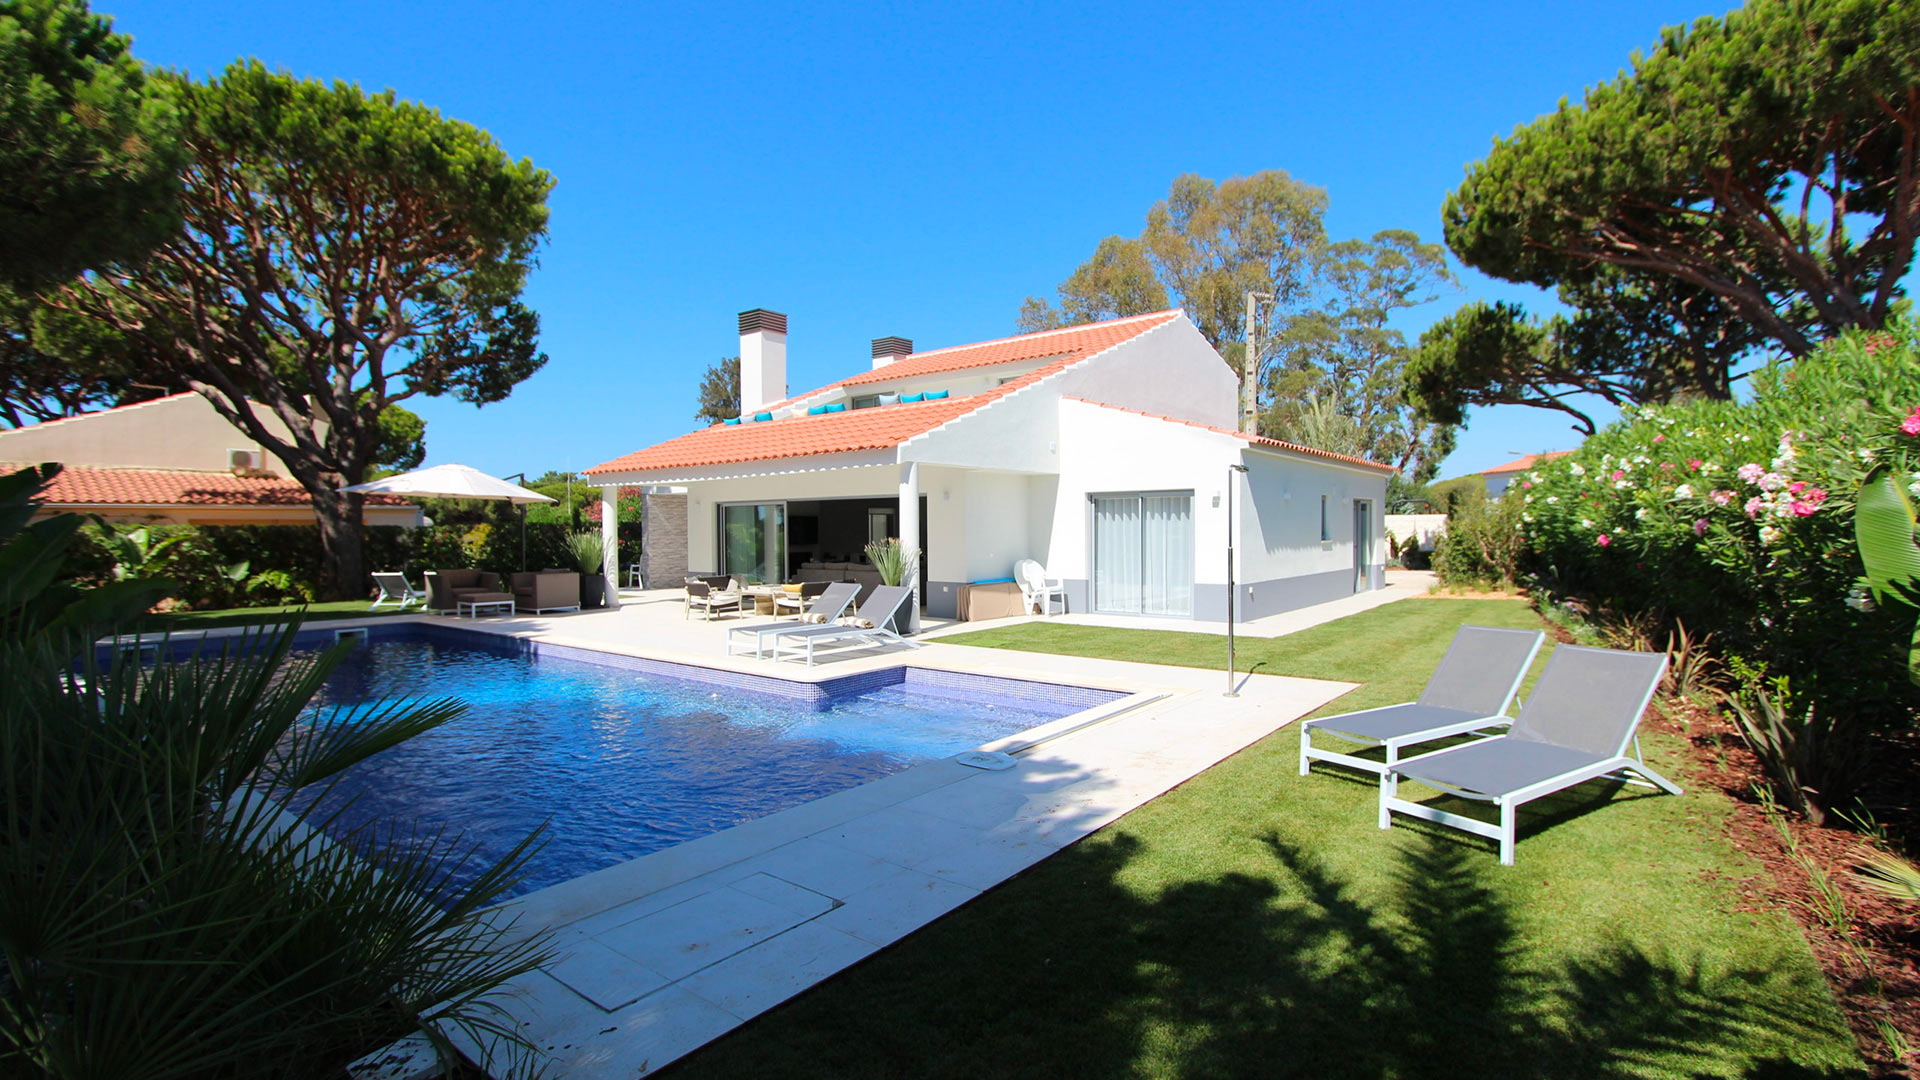 Villa Villa Flores, Rental in Algarve